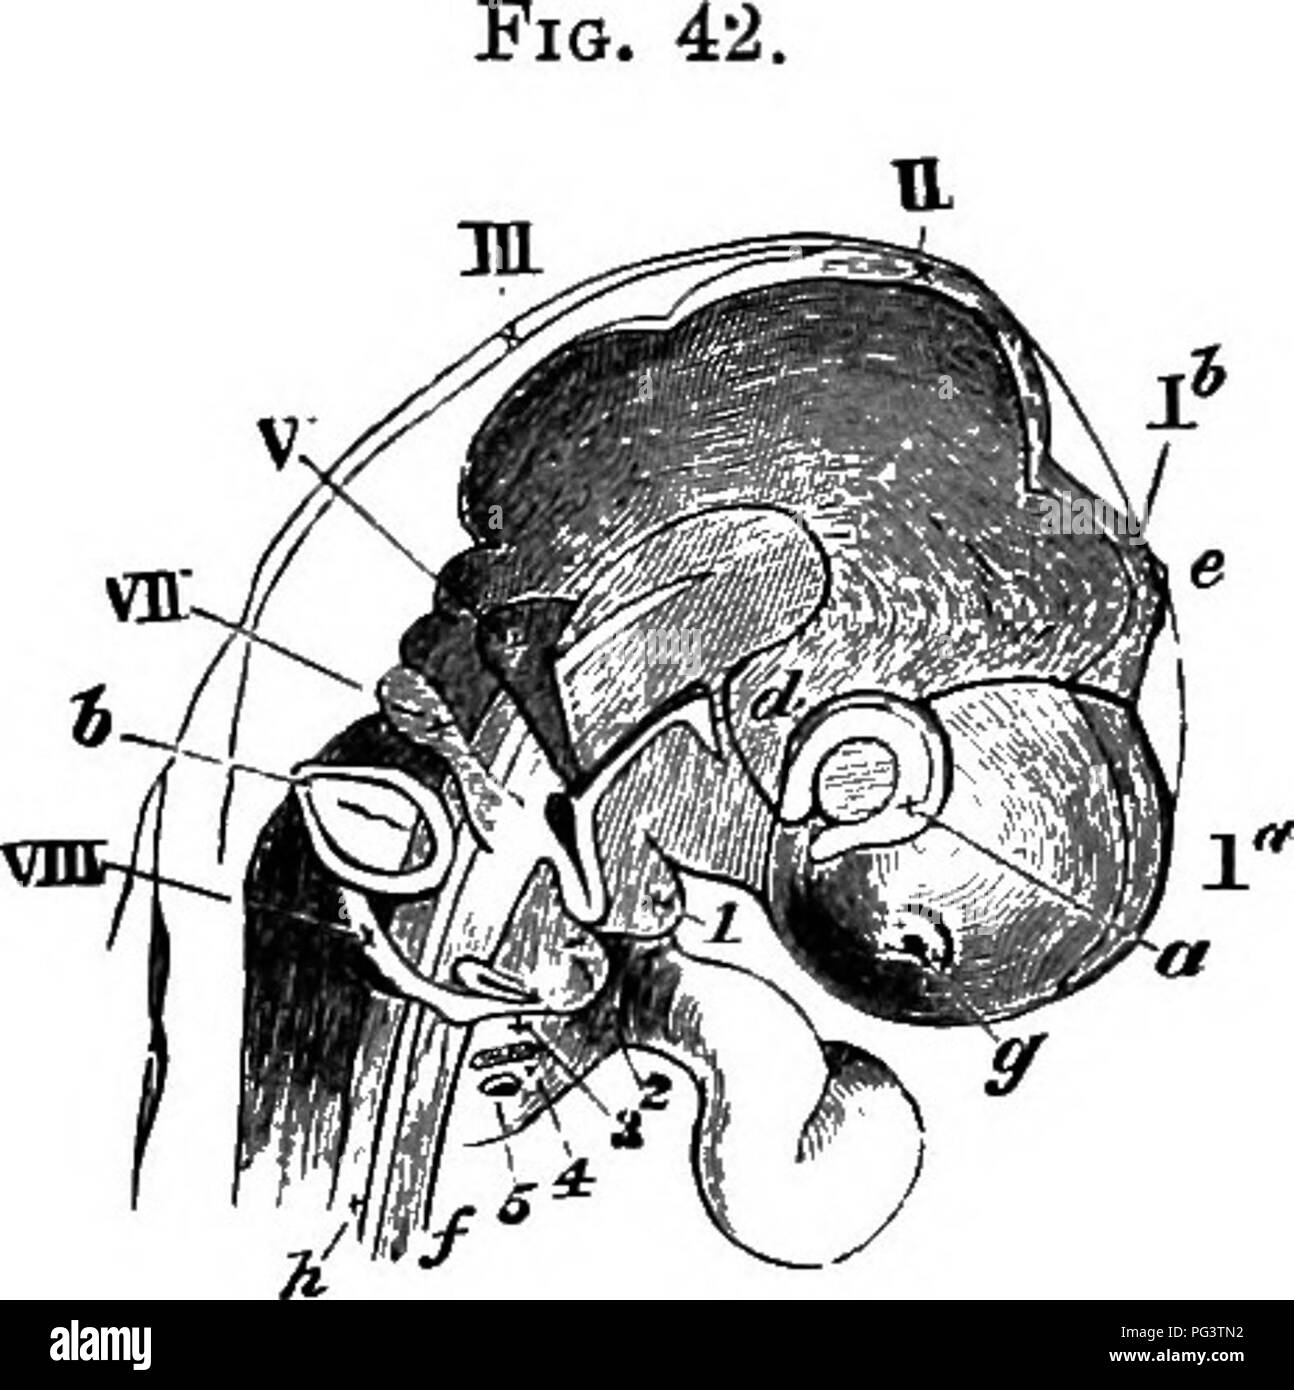 . Les éléments d'embryologie . L'embryologie. VI.] NEKVES la boîte crânienne. 127. Chef op un embryon Chick ou le troisième jour (Sevekty «- FiTE Heures) Vue de côté comme un objet transparent. (À partir de la Huxley.) la. hémisphères cérébraux. lb. de vésicules le troisième ventricule. II. la mi-cerveau. III. hind-cerveau, fosse nasale. g. a. de la vésicule optique. b. vésicule otique, infundibulum. d. e. corps pinéal. h. noto- chord. C. cinquième nerf. VII. septième nerf. Glossopharyngien et pnemnogastric VIII. les nerfs, i, 2, 3, 4, 5 les cinq plis viscérale. Direction générale du cinquième nerf) est distribué à la première arche viscérale. Le second mas Banque D'Images